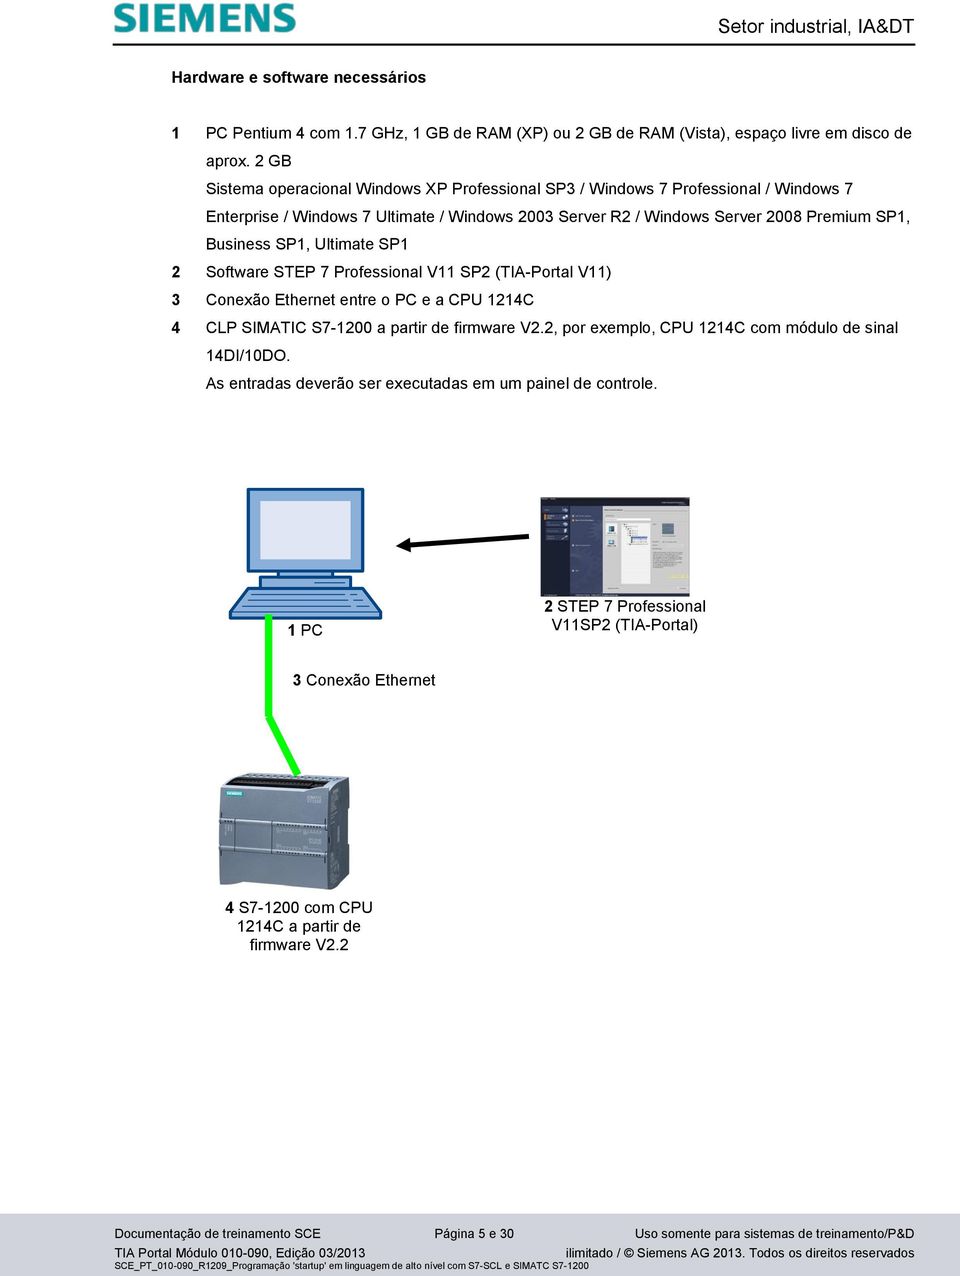 Ultimate SP1 2 Software STEP 7 Professional V11 SP2 (TIA-Portal V11) 3 Conexão Ethernet entre o PC e a CPU 1214C 4 CLP SIMATIC S7-1200 a partir de firmware V2.